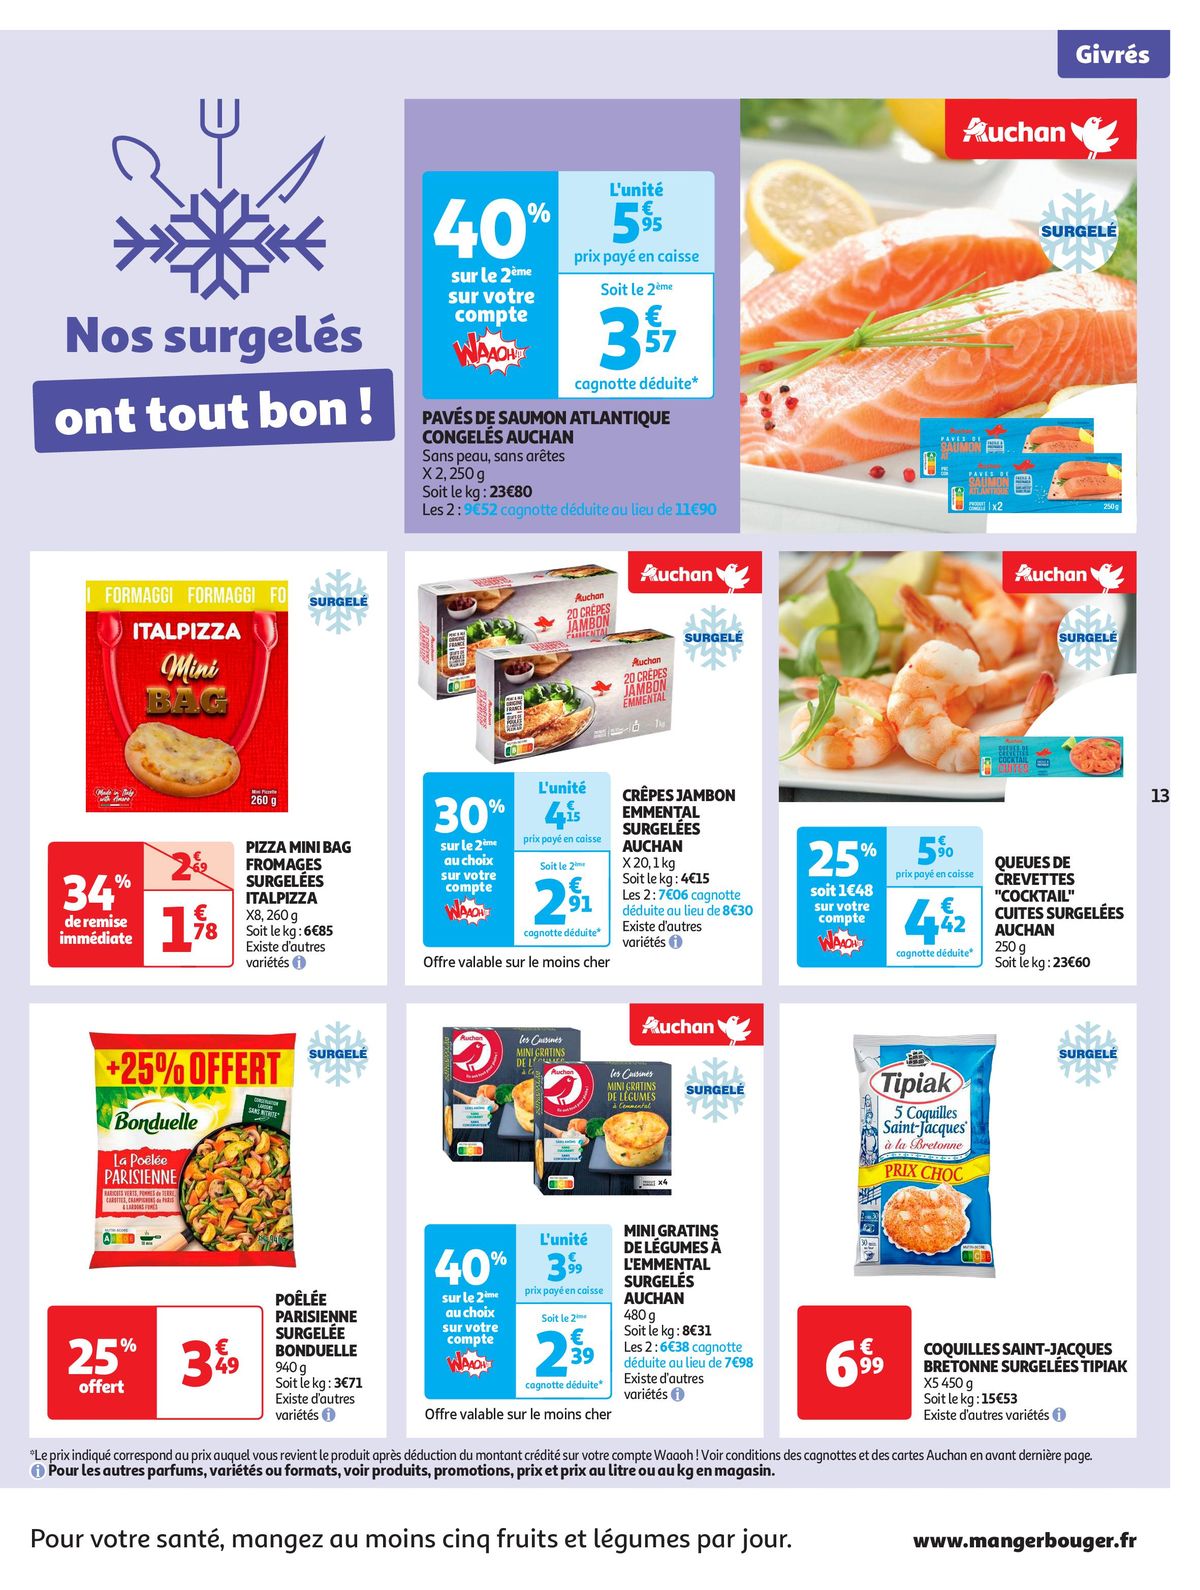 Catalogue Format XXL à prix XXS dans votre supermarché, page 00013